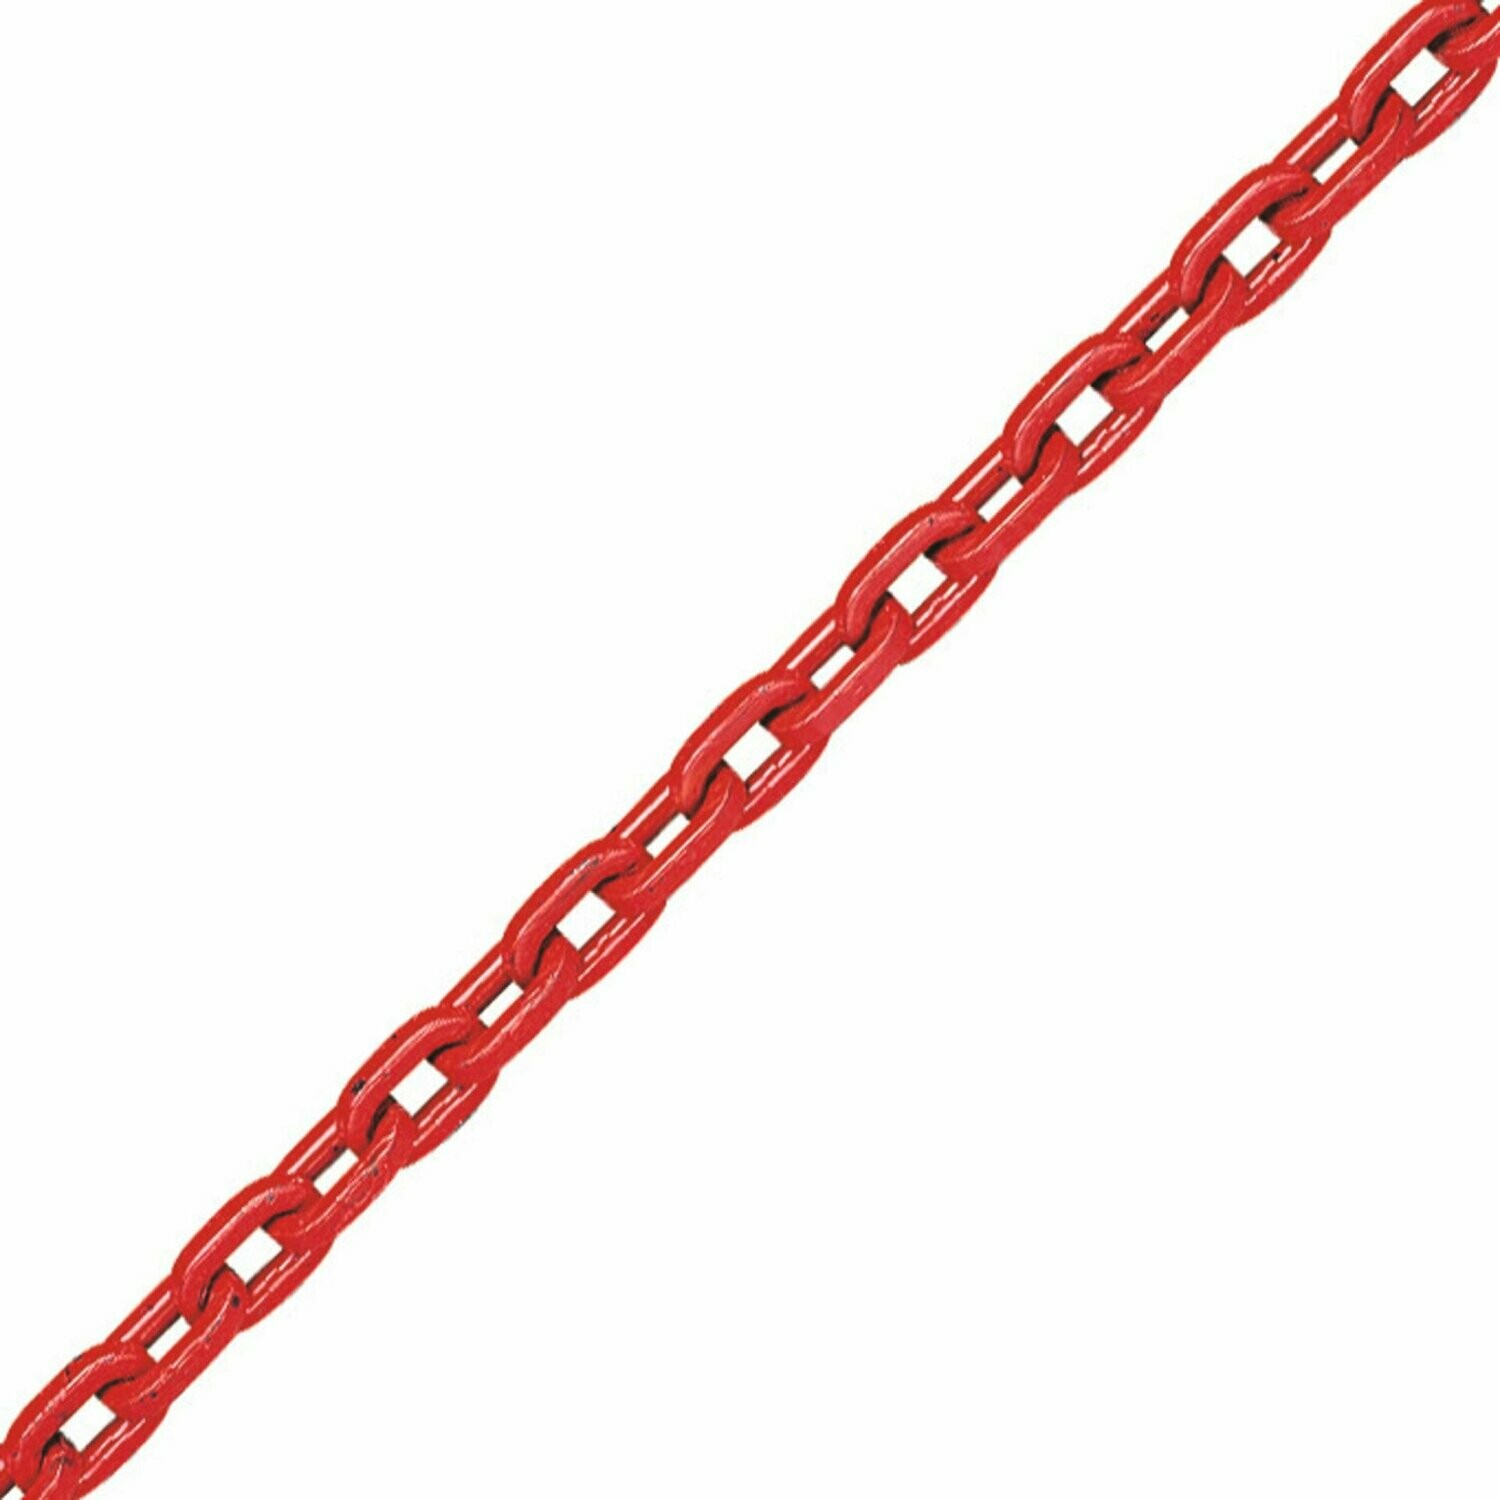 Grade 80 Plus Round Link Chain